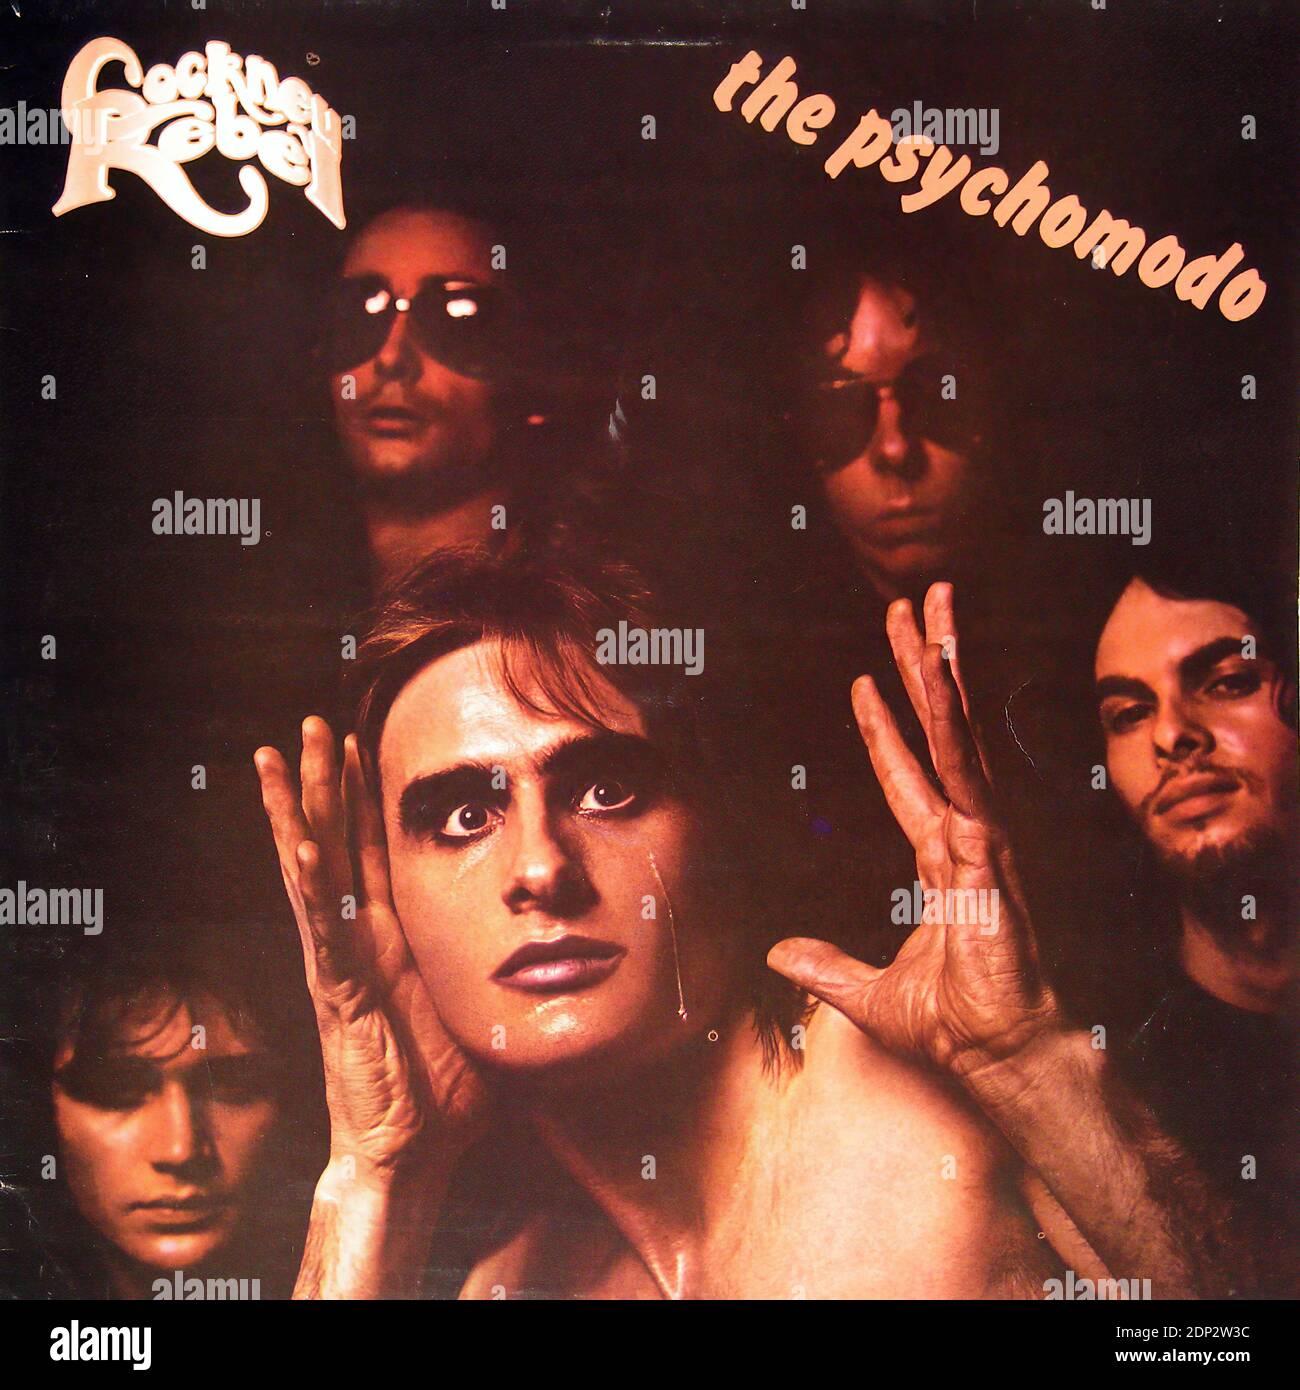 Cockney Rebel The Psychomodo - Vintage Vinyl Record Cover Stock Photo